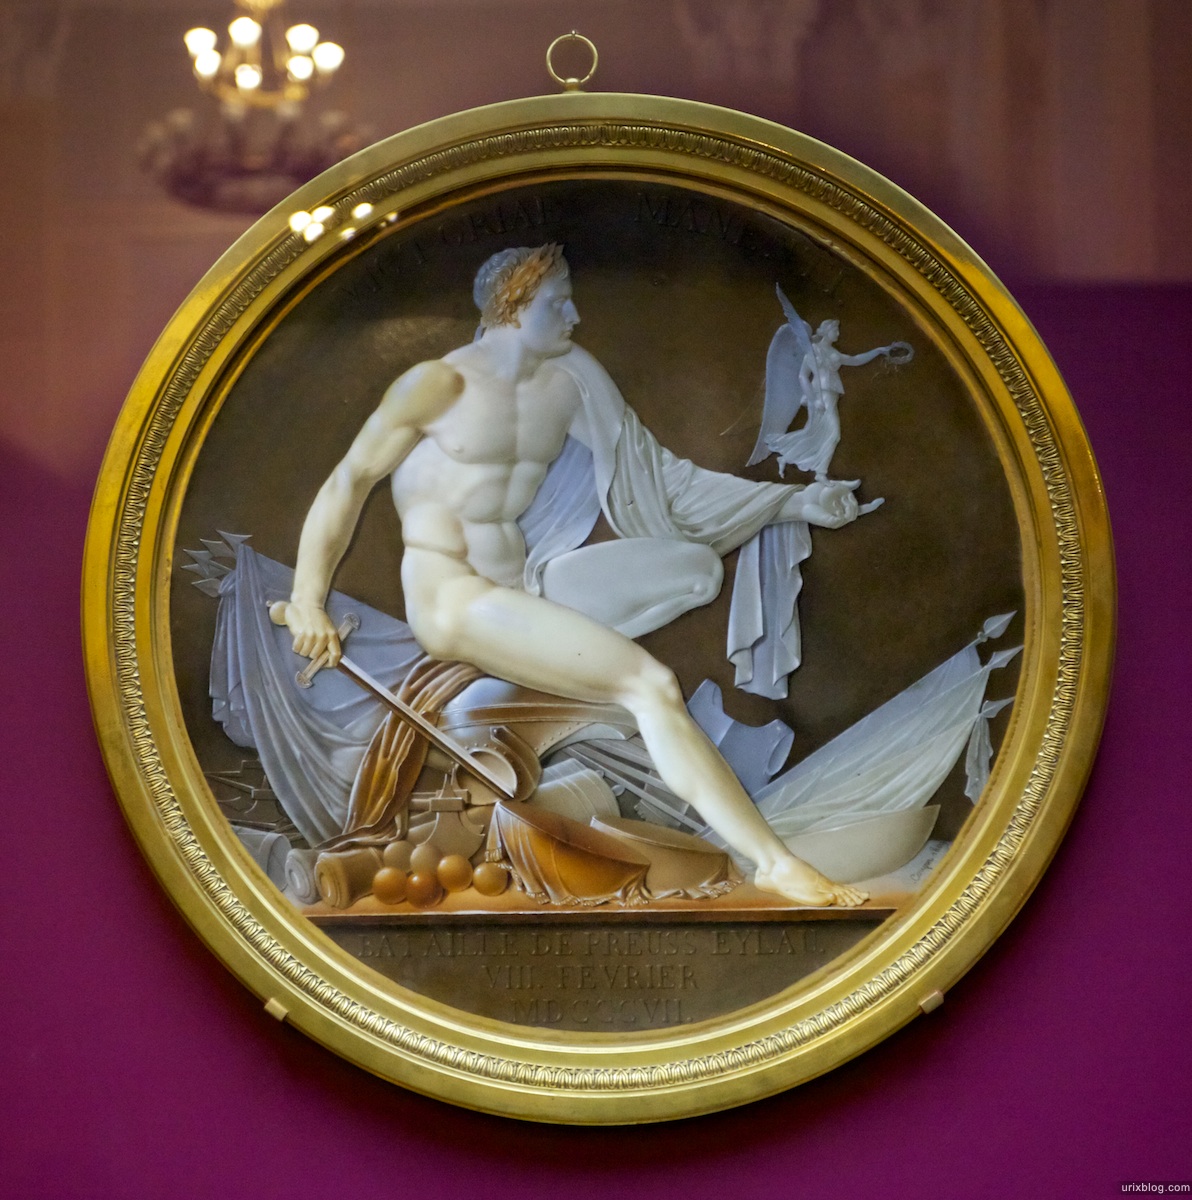 2010 Выставка Наполеон и Лувр Исторический музей Москва